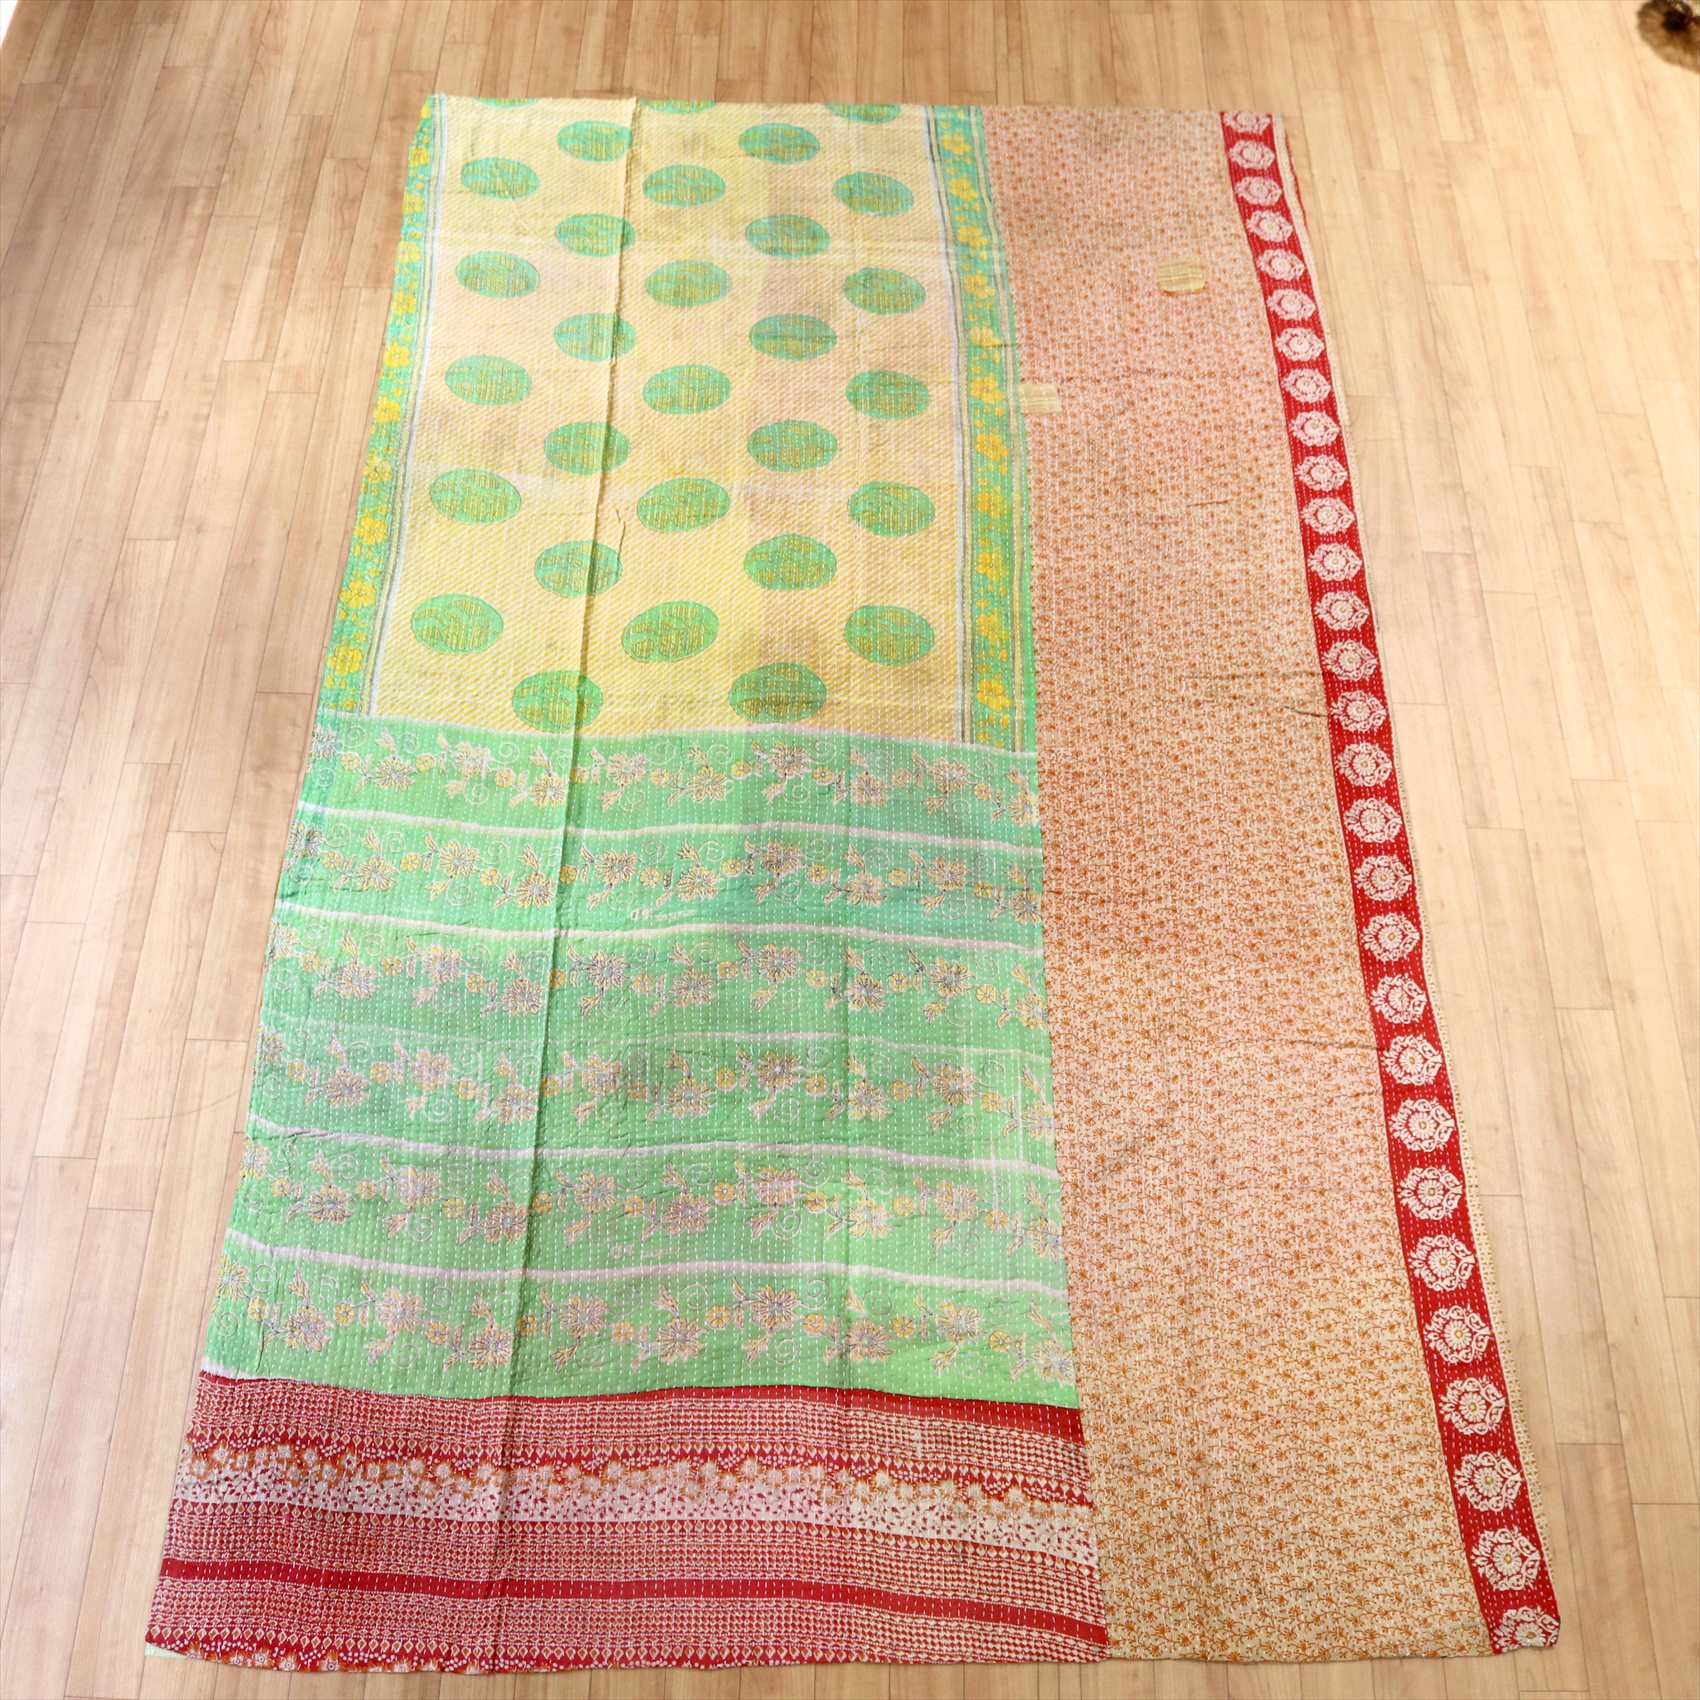 インド　カンタ刺繍・パッチワーク/ラリーキルト　古布・ヴィンテージファブリック 237×140cm カラフル 様々なパターン Kantha embroidery  India